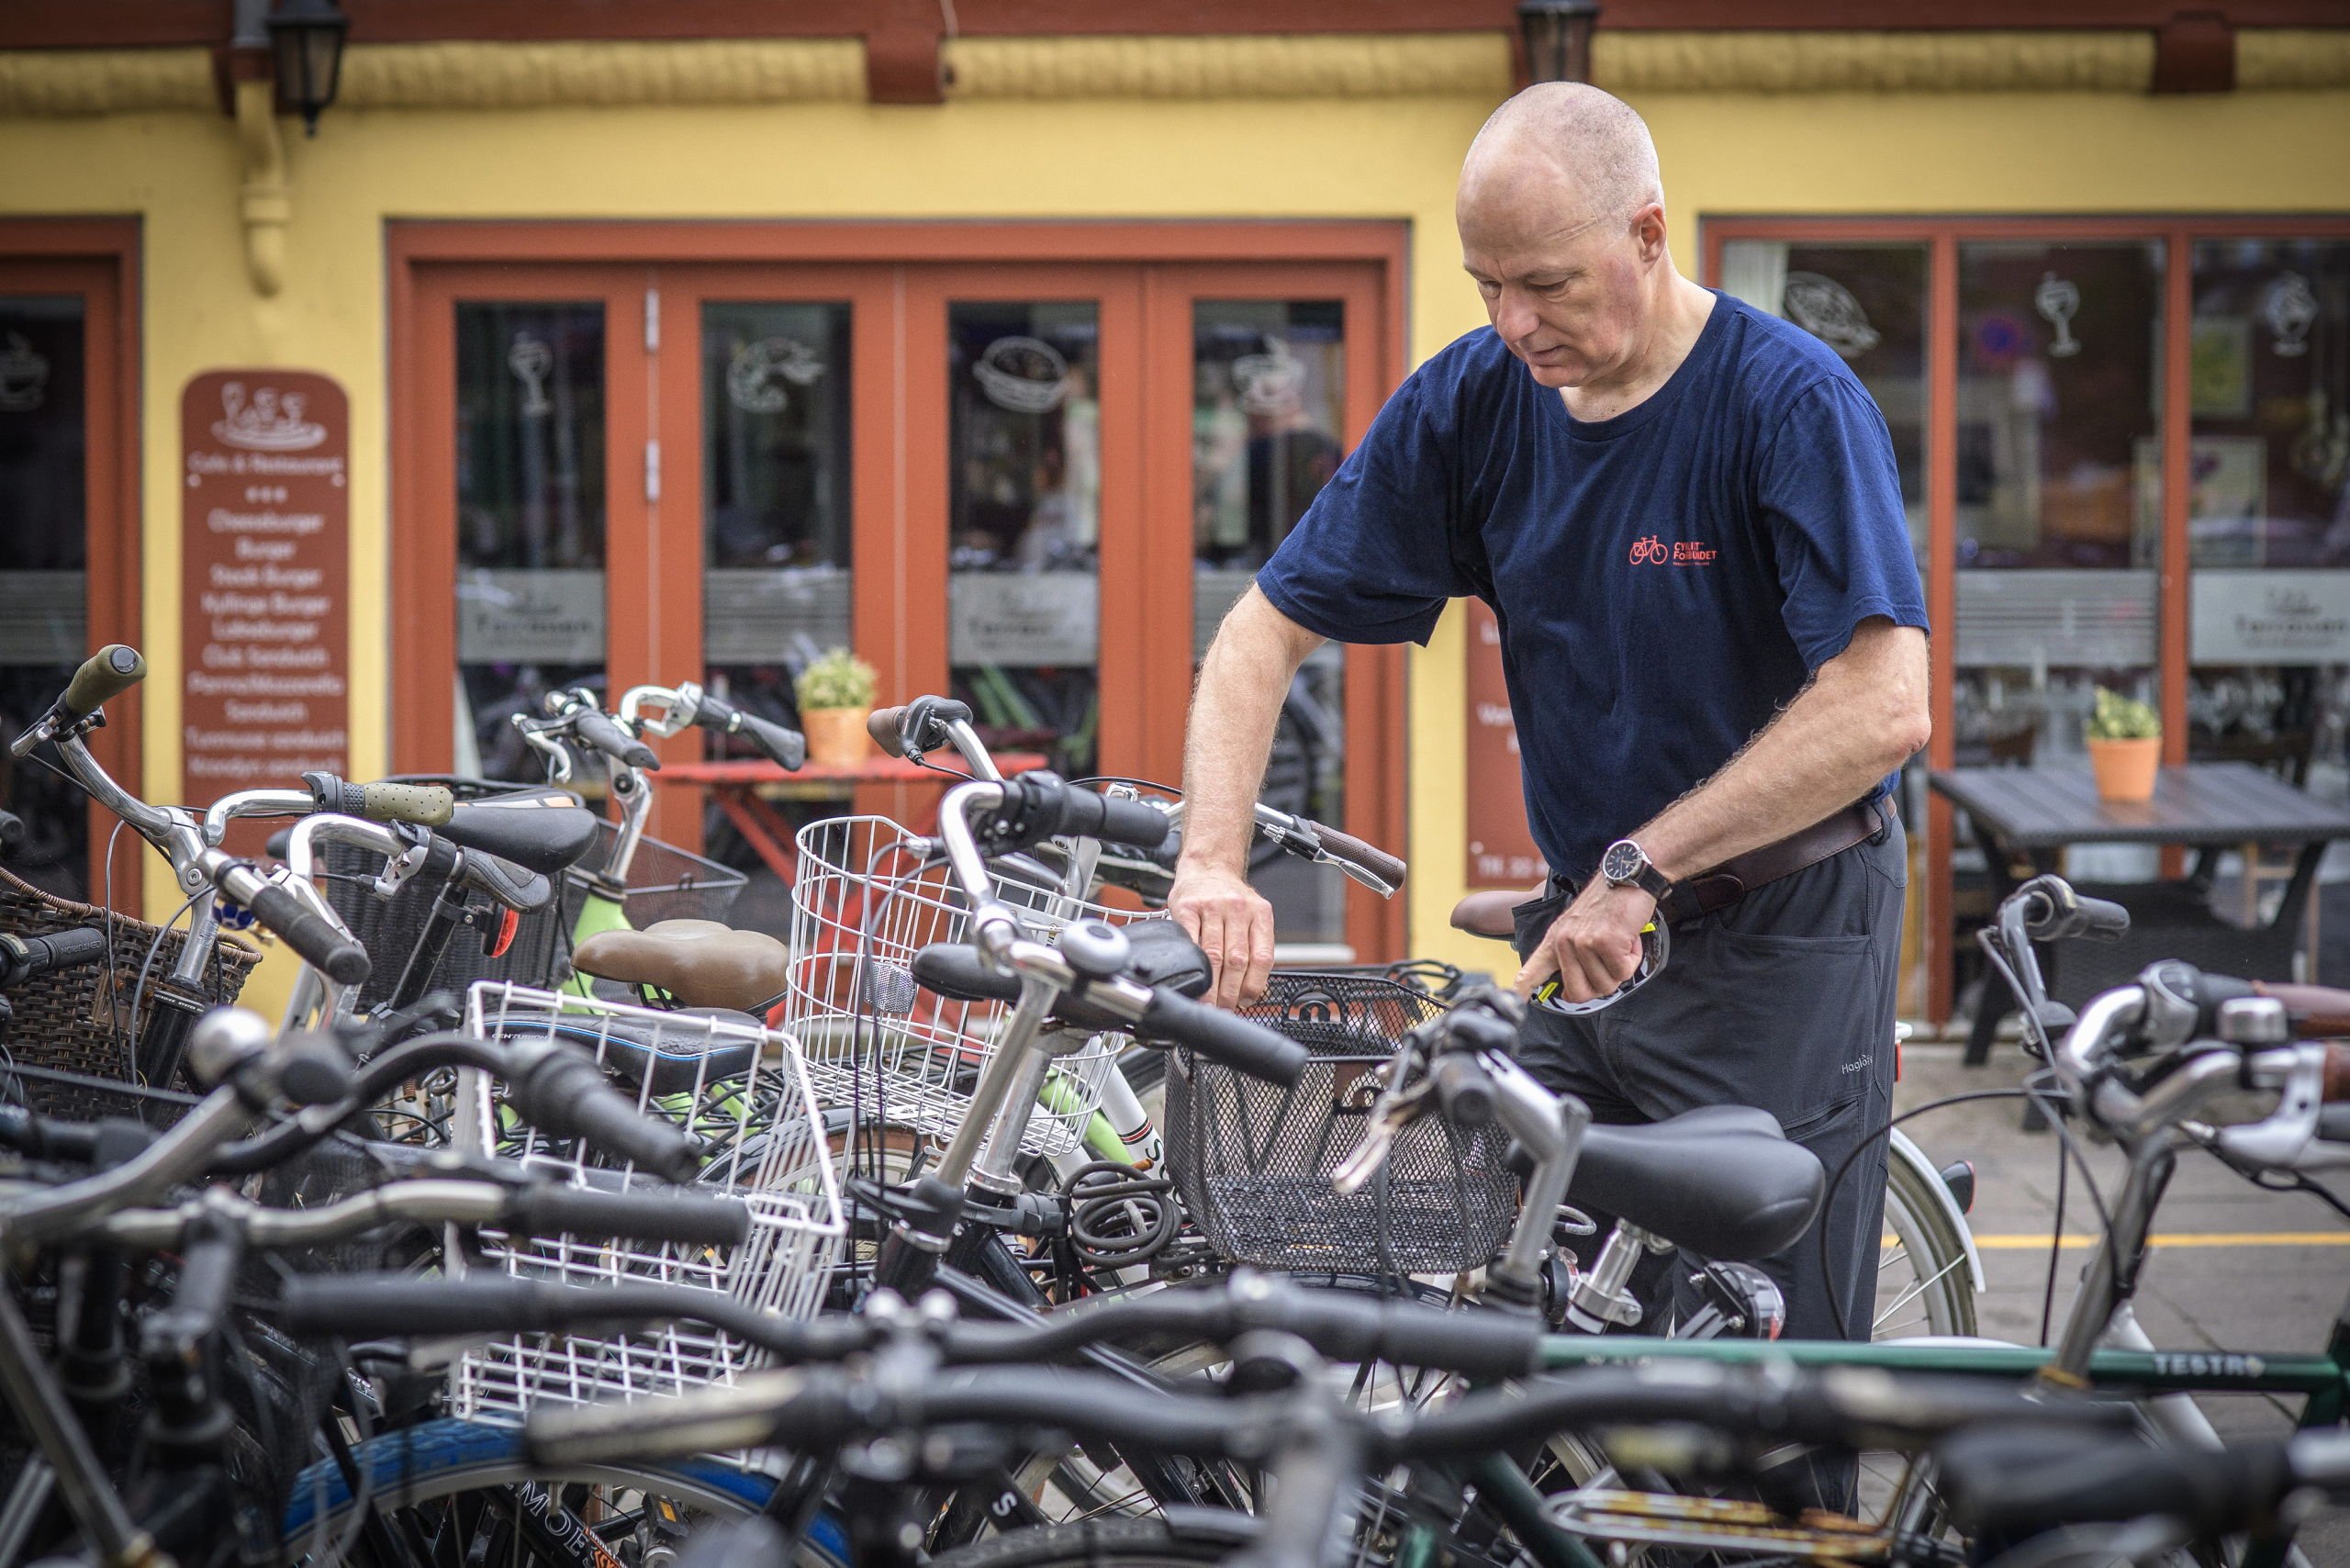 Playful Jeg har erkendt det Lake Taupo På cykeltur i Aalborg: Hvor kan kommunen gøre det nemmere at være cyklist?  | Nordjyske.dk